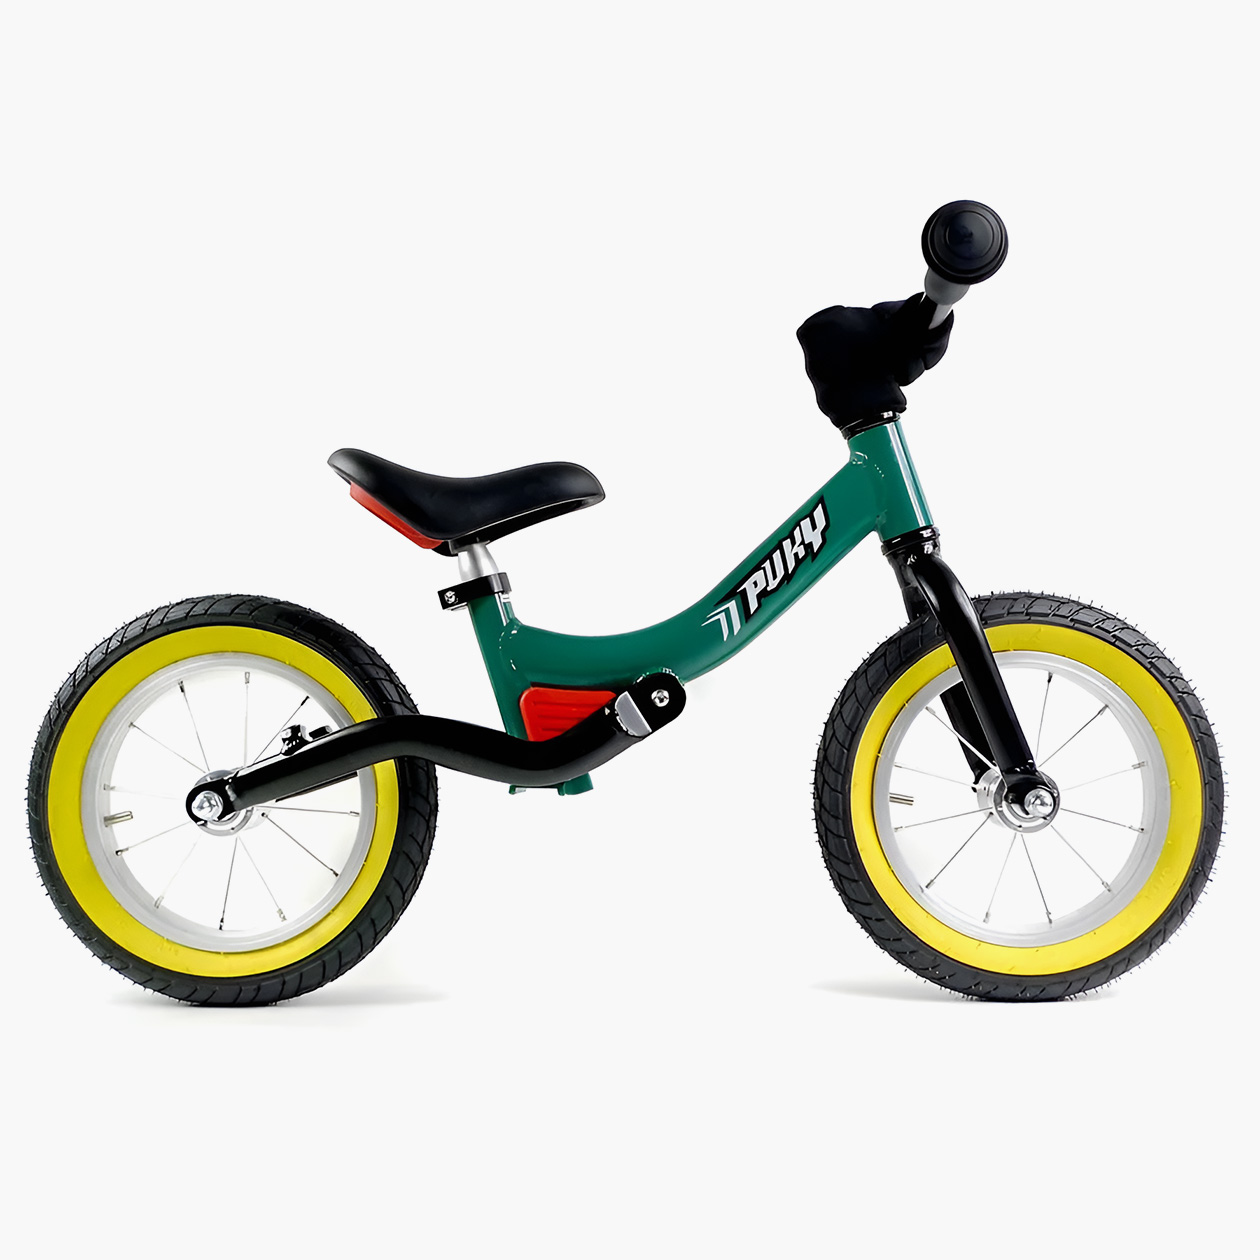 На беговеле Puky Ride черная вилка заднего колеса просто прикручена к зеленой раме. Между ними расположен красный эластомер. Источник: ozon.ru